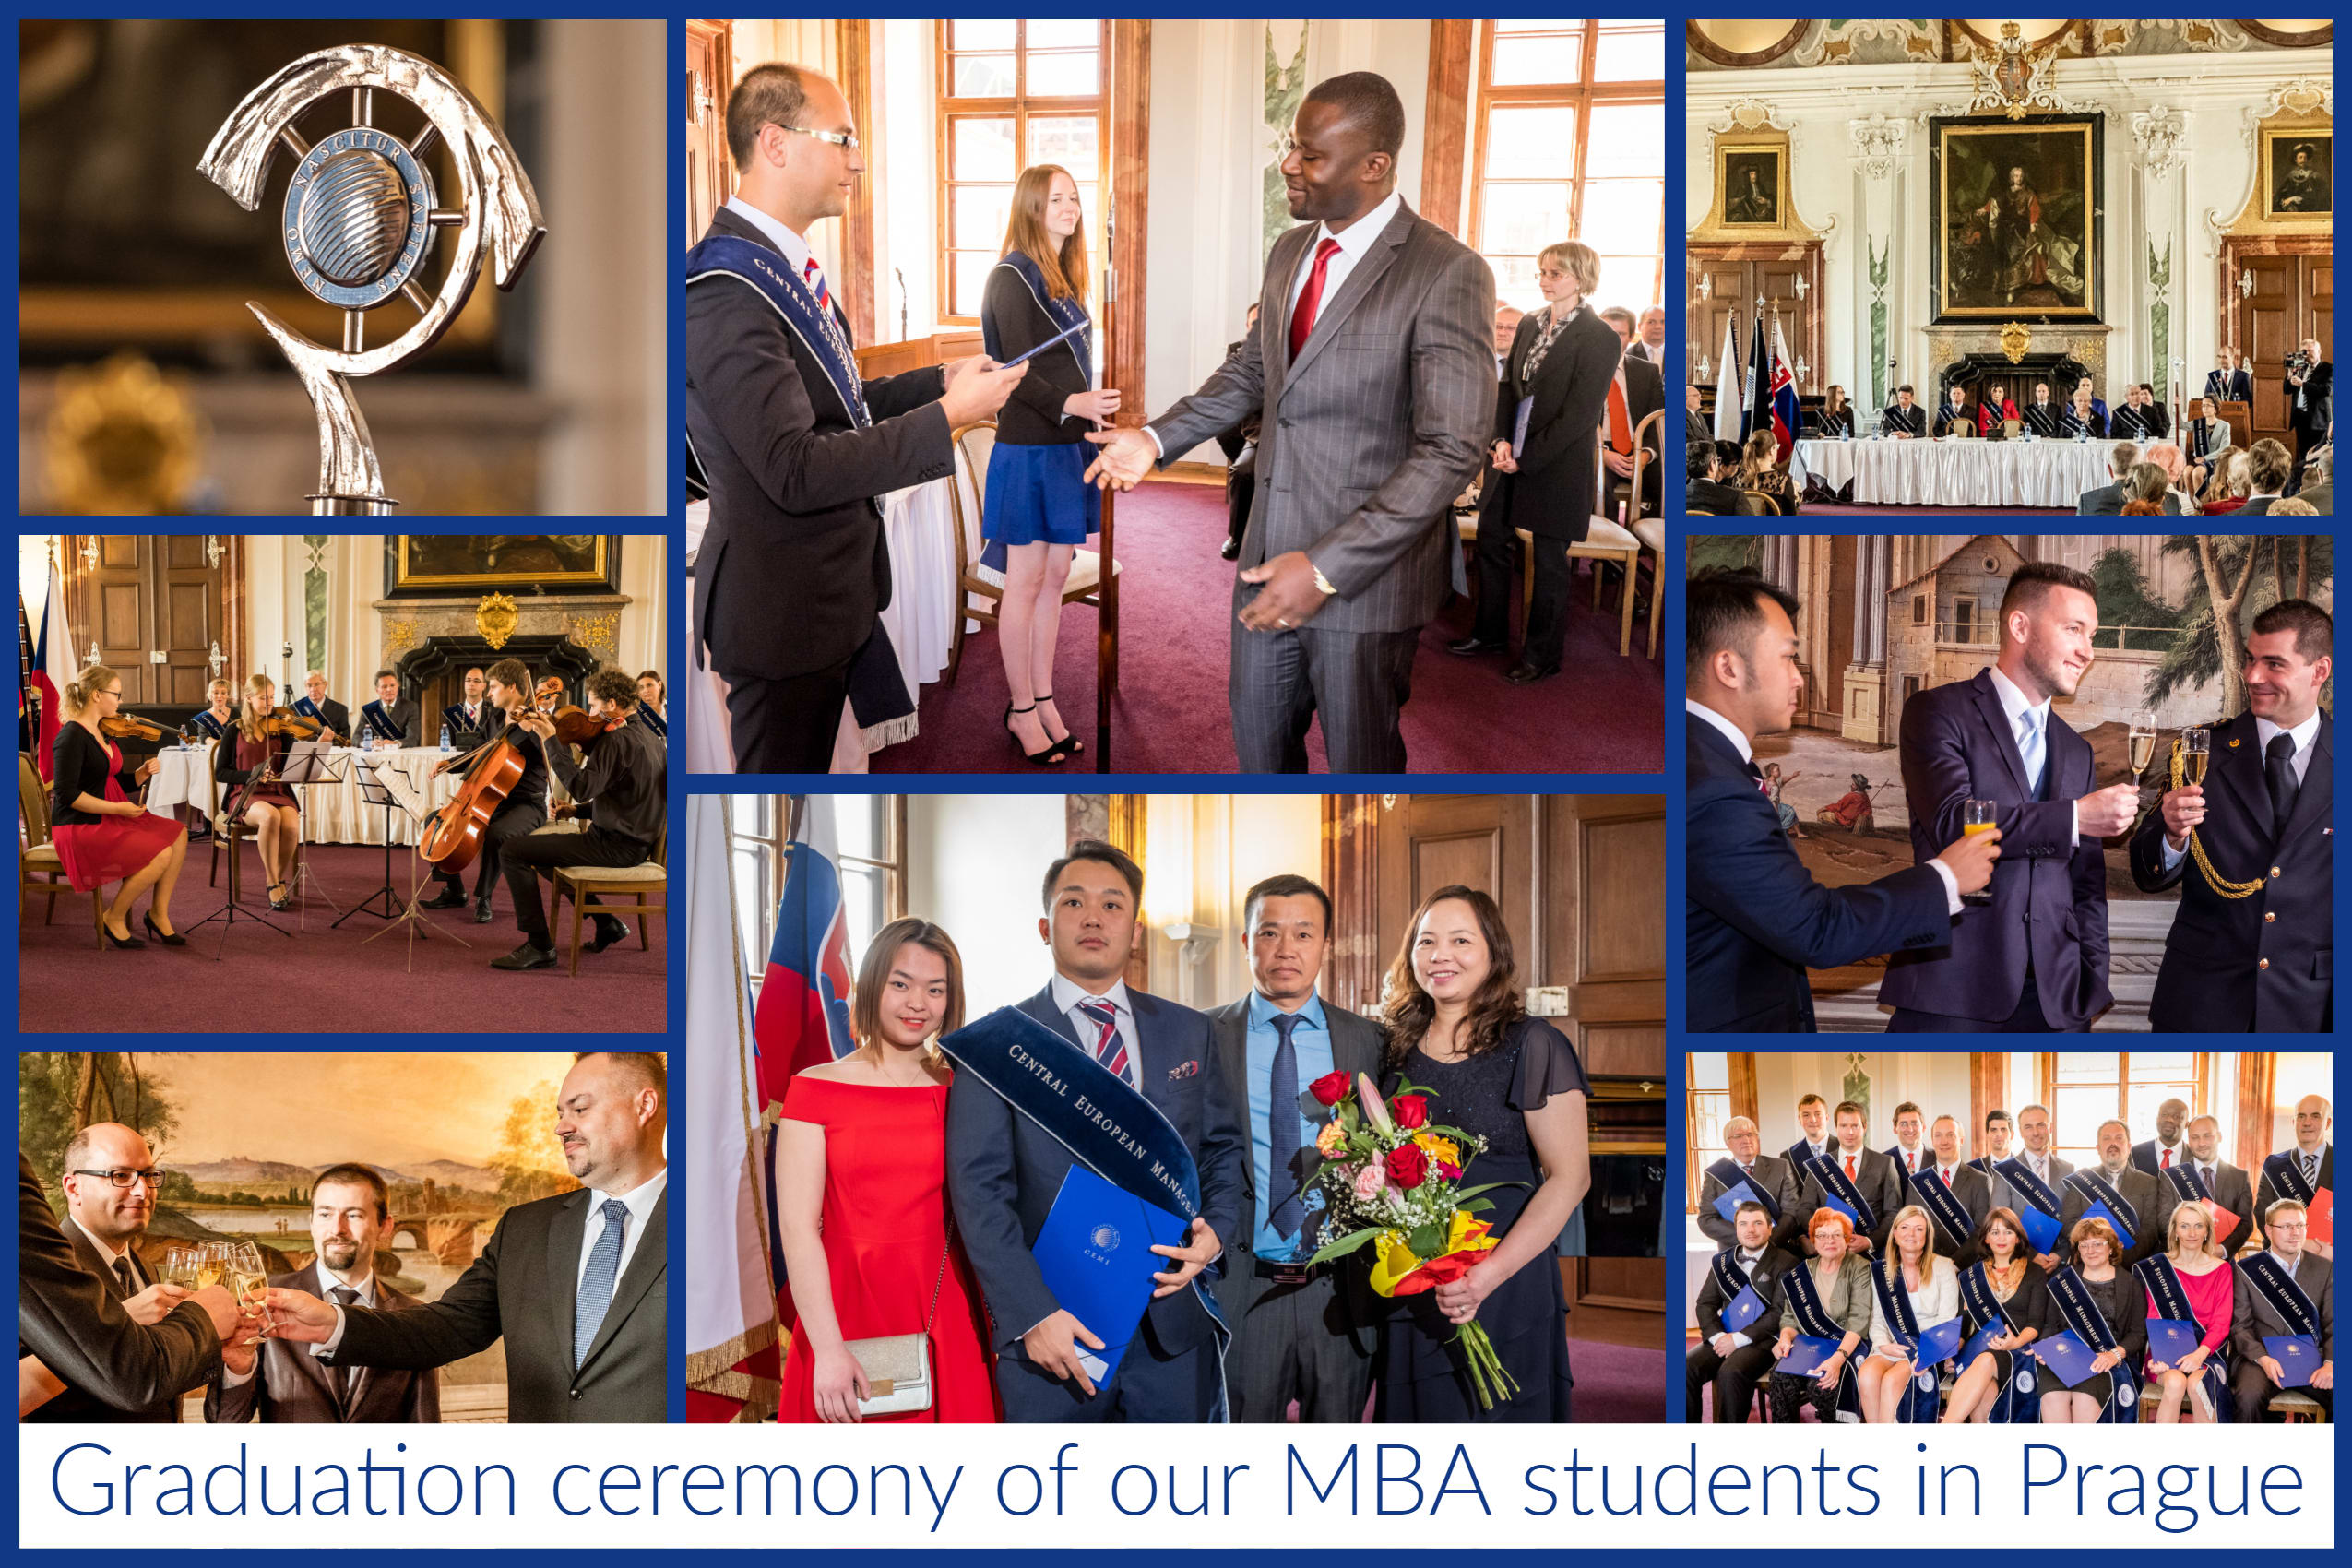 جشن فارغ التحصیلی دانشجوی MBA ما در پراگ